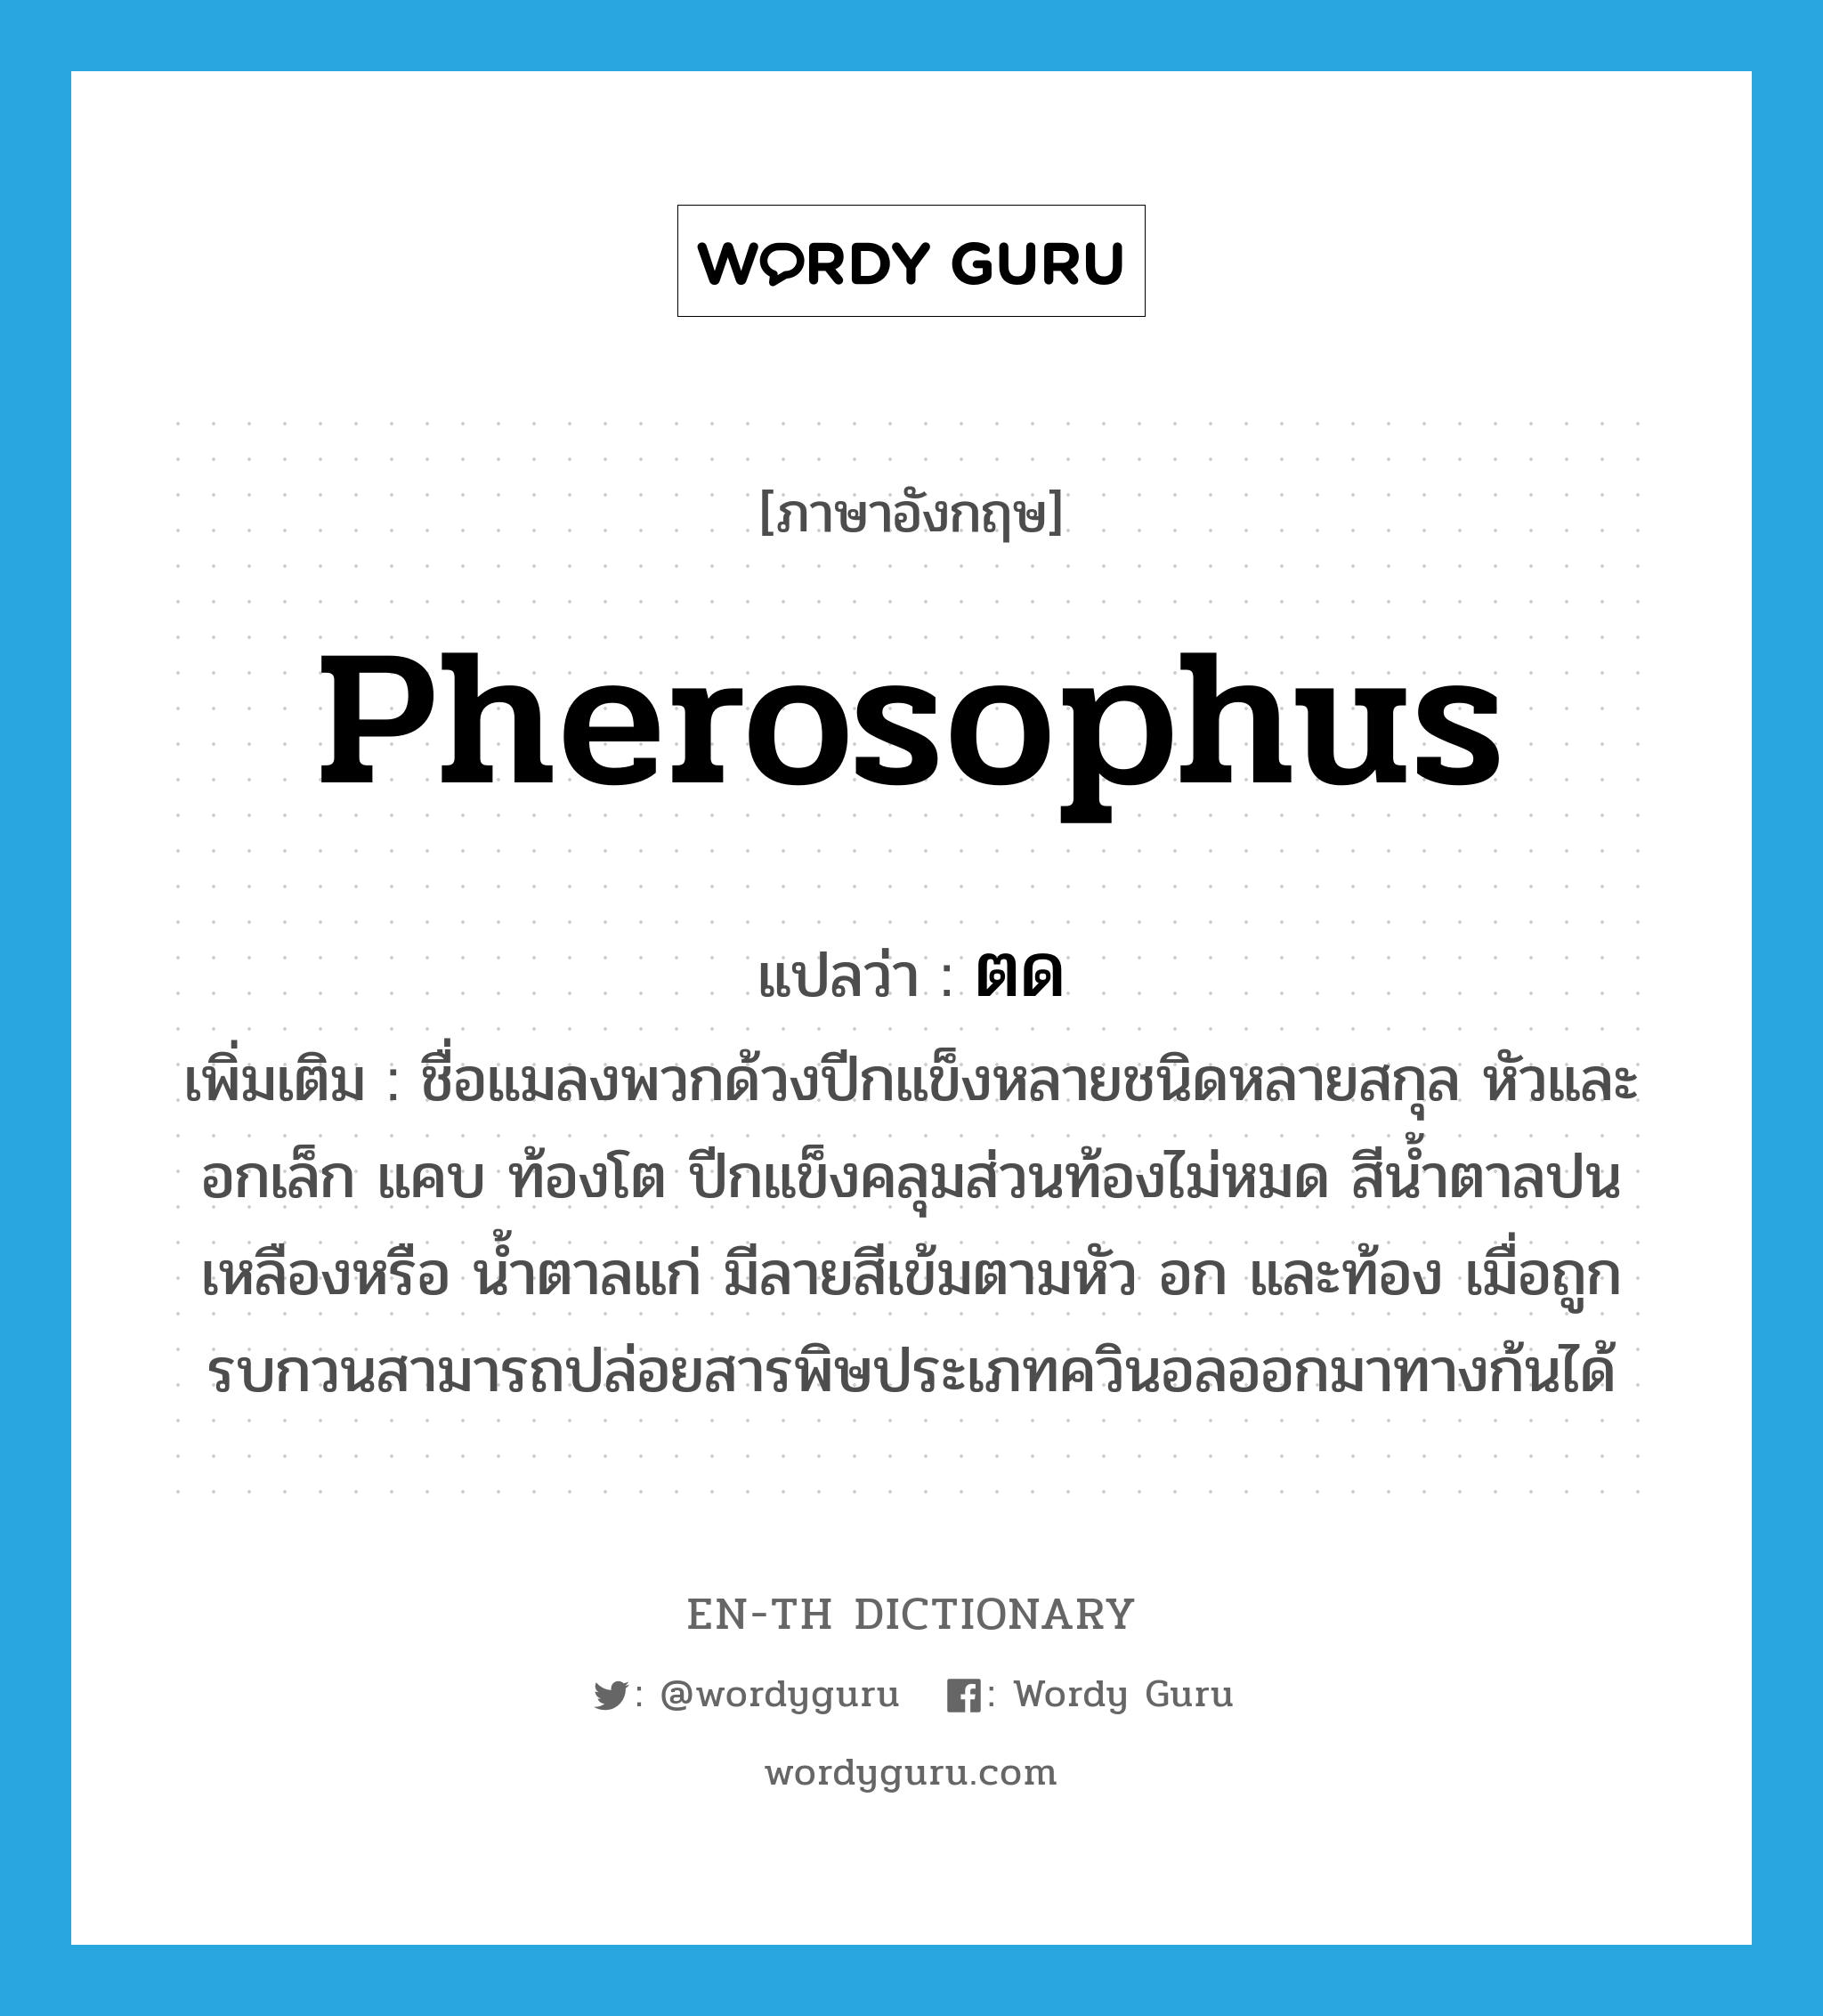 Pherosophus แปลว่า?, คำศัพท์ภาษาอังกฤษ Pherosophus แปลว่า ตด ประเภท N เพิ่มเติม ชื่อแมลงพวกด้วงปีกแข็งหลายชนิดหลายสกุล หัวและอกเล็ก แคบ ท้องโต ปีกแข็งคลุมส่วนท้องไม่หมด สีน้ำตาลปนเหลืองหรือ น้ำตาลแก่ มีลายสีเข้มตามหัว อก และท้อง เมื่อถูกรบกวนสามารถปล่อยสารพิษประเภทควินอลออกมาทางก้นได้ หมวด N